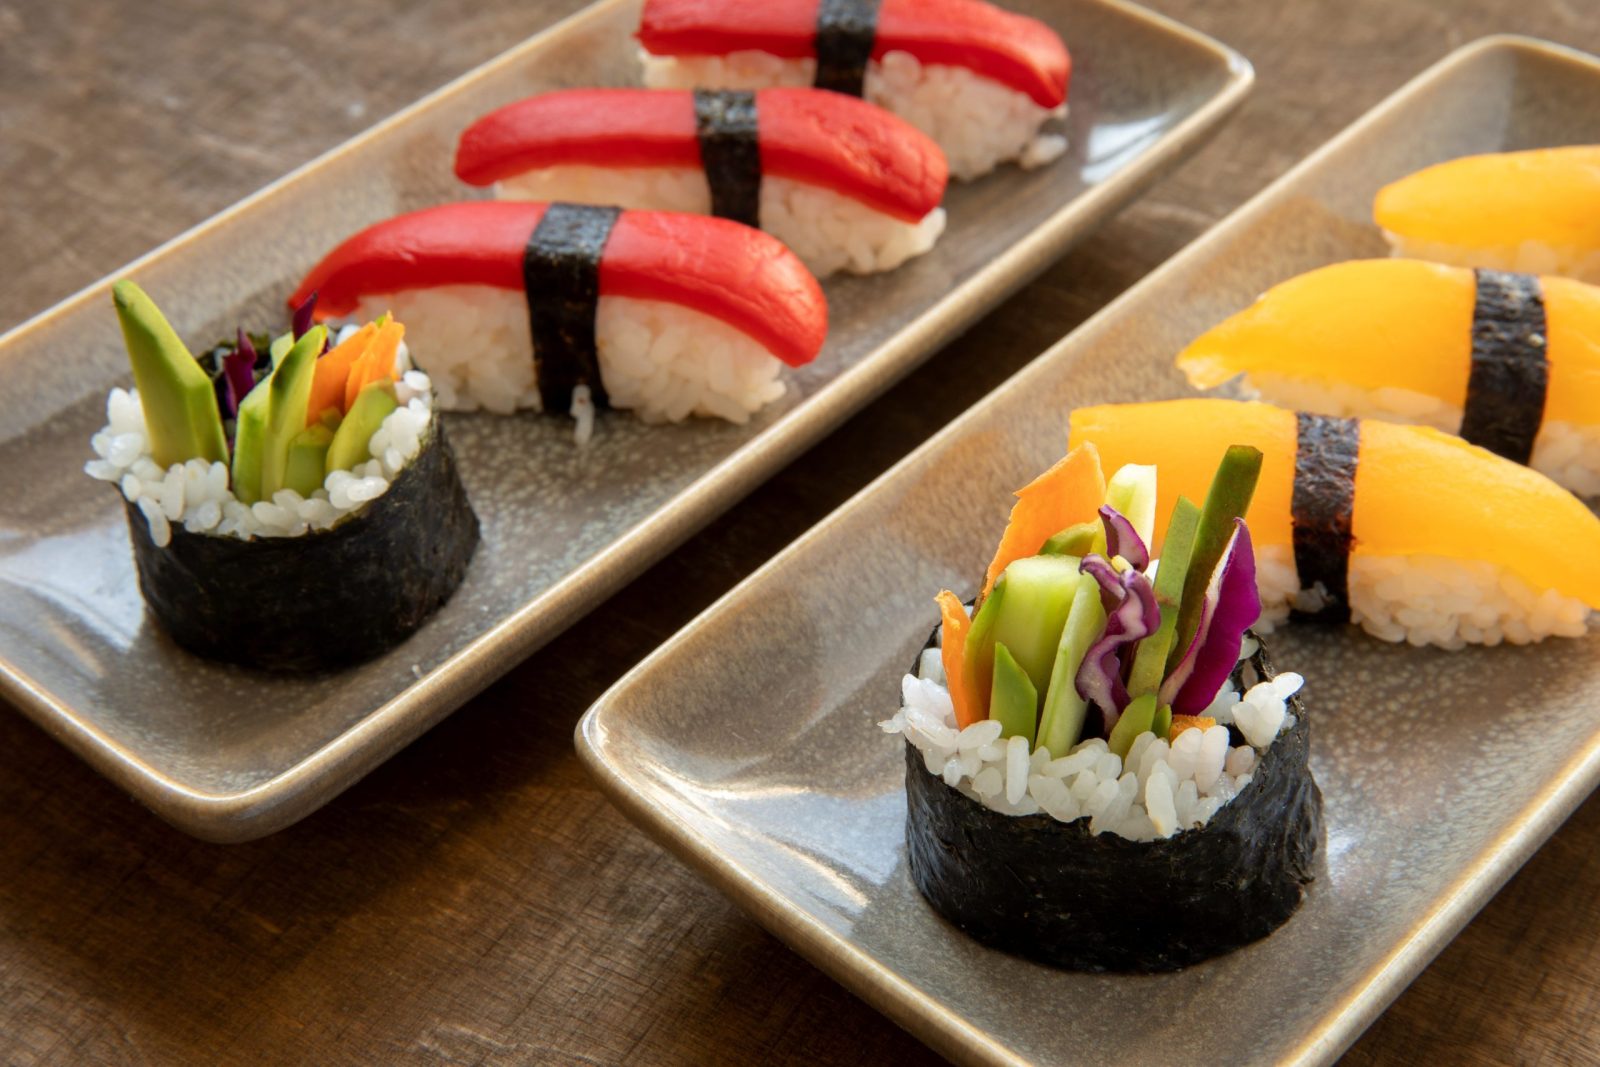 Vegan sushi nigiri and vegan roll